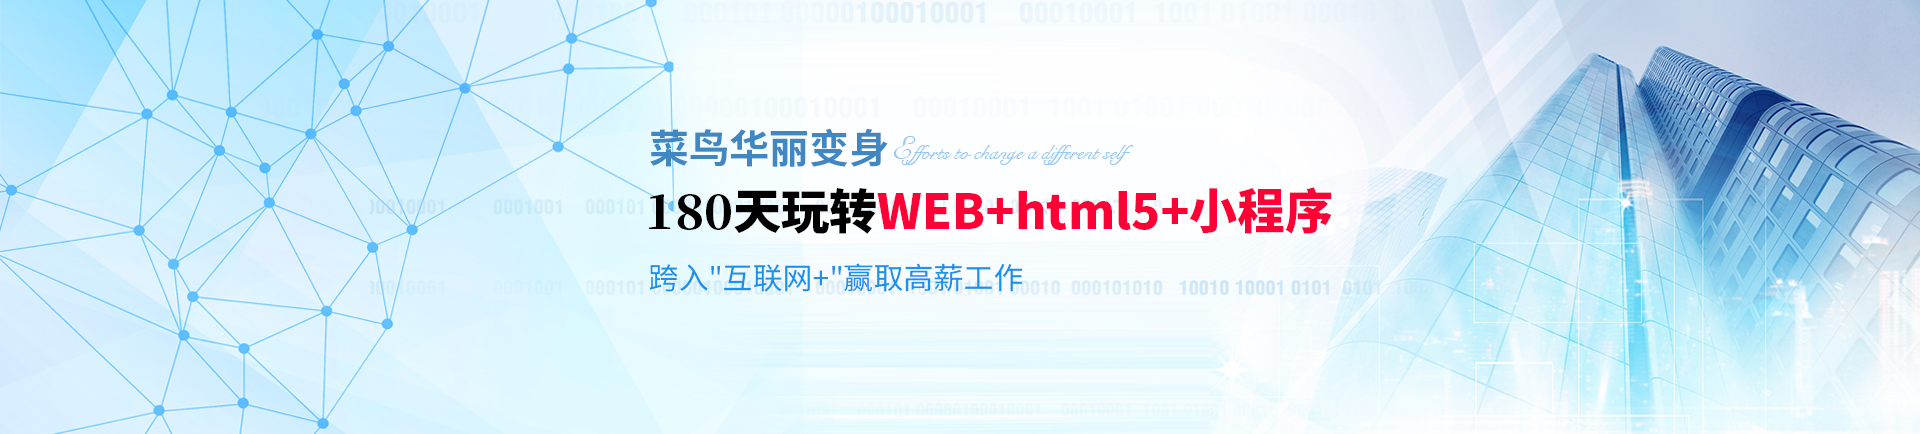 180天玩转WEB+html5+小程序 跨入互联网+挑战高薪-beijing